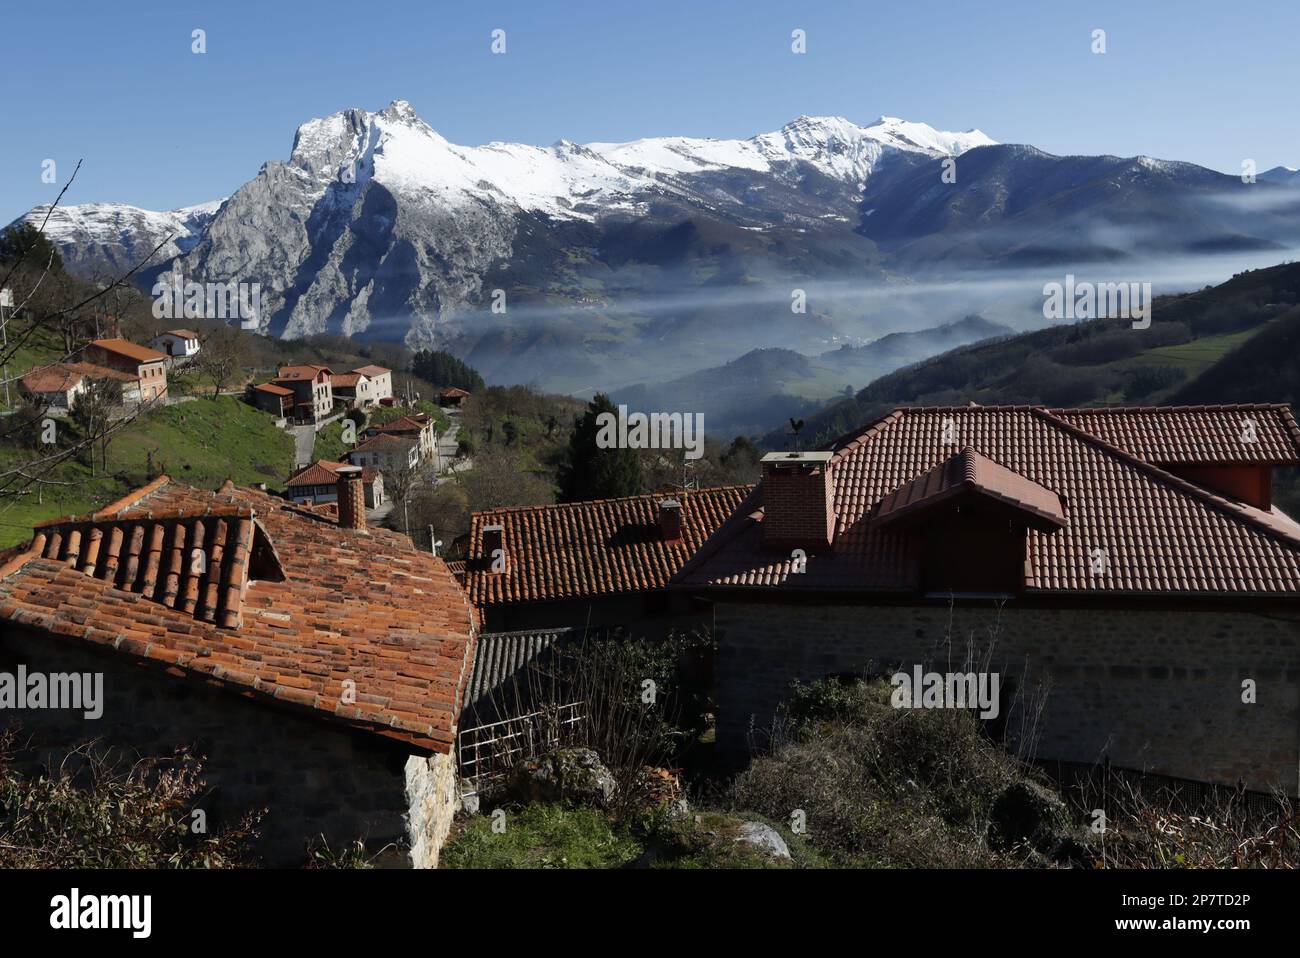 Tejados de teja roja y casa del pueblo de Colio en el valle con niebla de Liébana, con sus prados verdes y la montaña nevada que los circunda. Banque D'Images